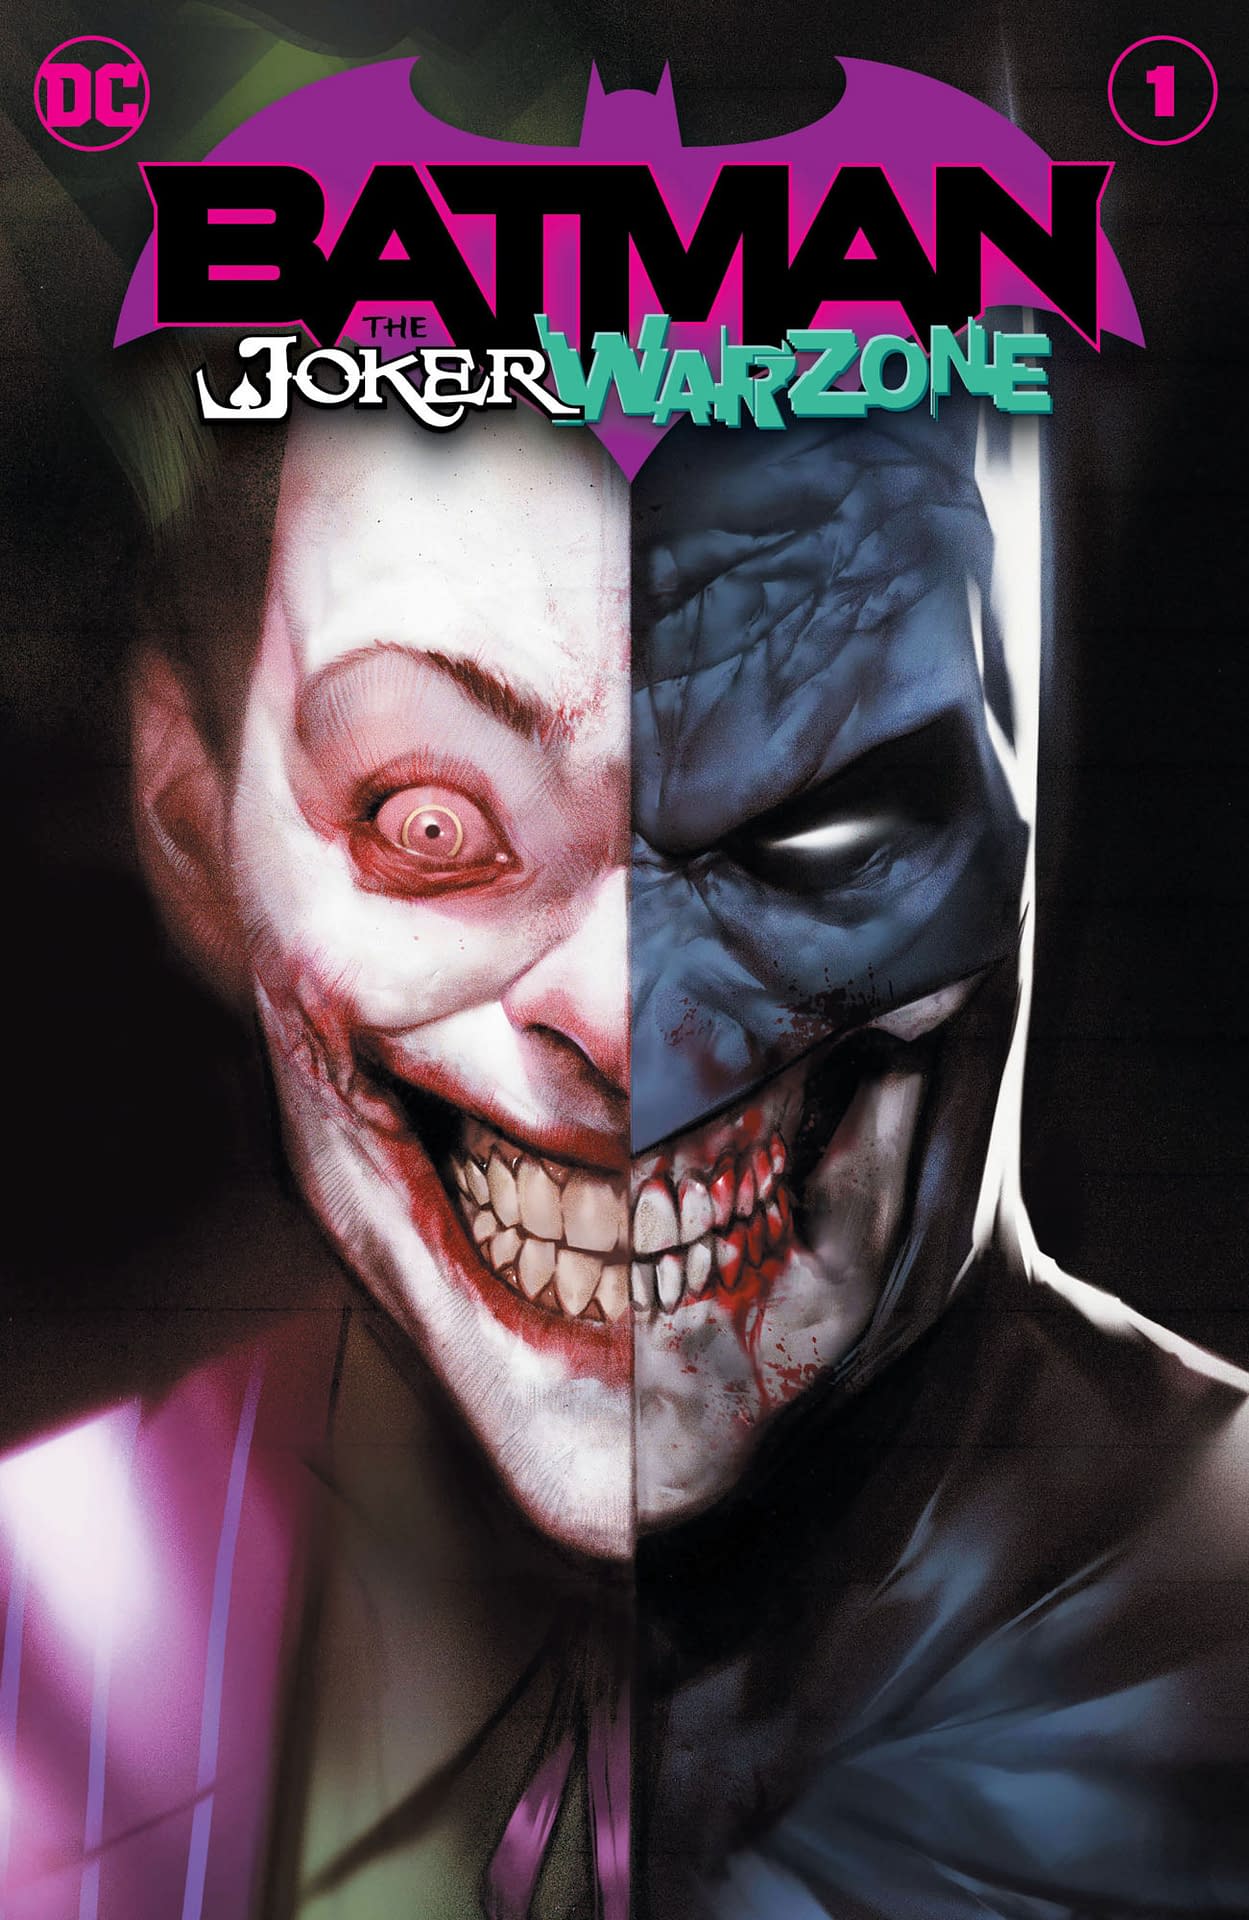 DC Comics Launch Batman: The Joker War One-Shot in September